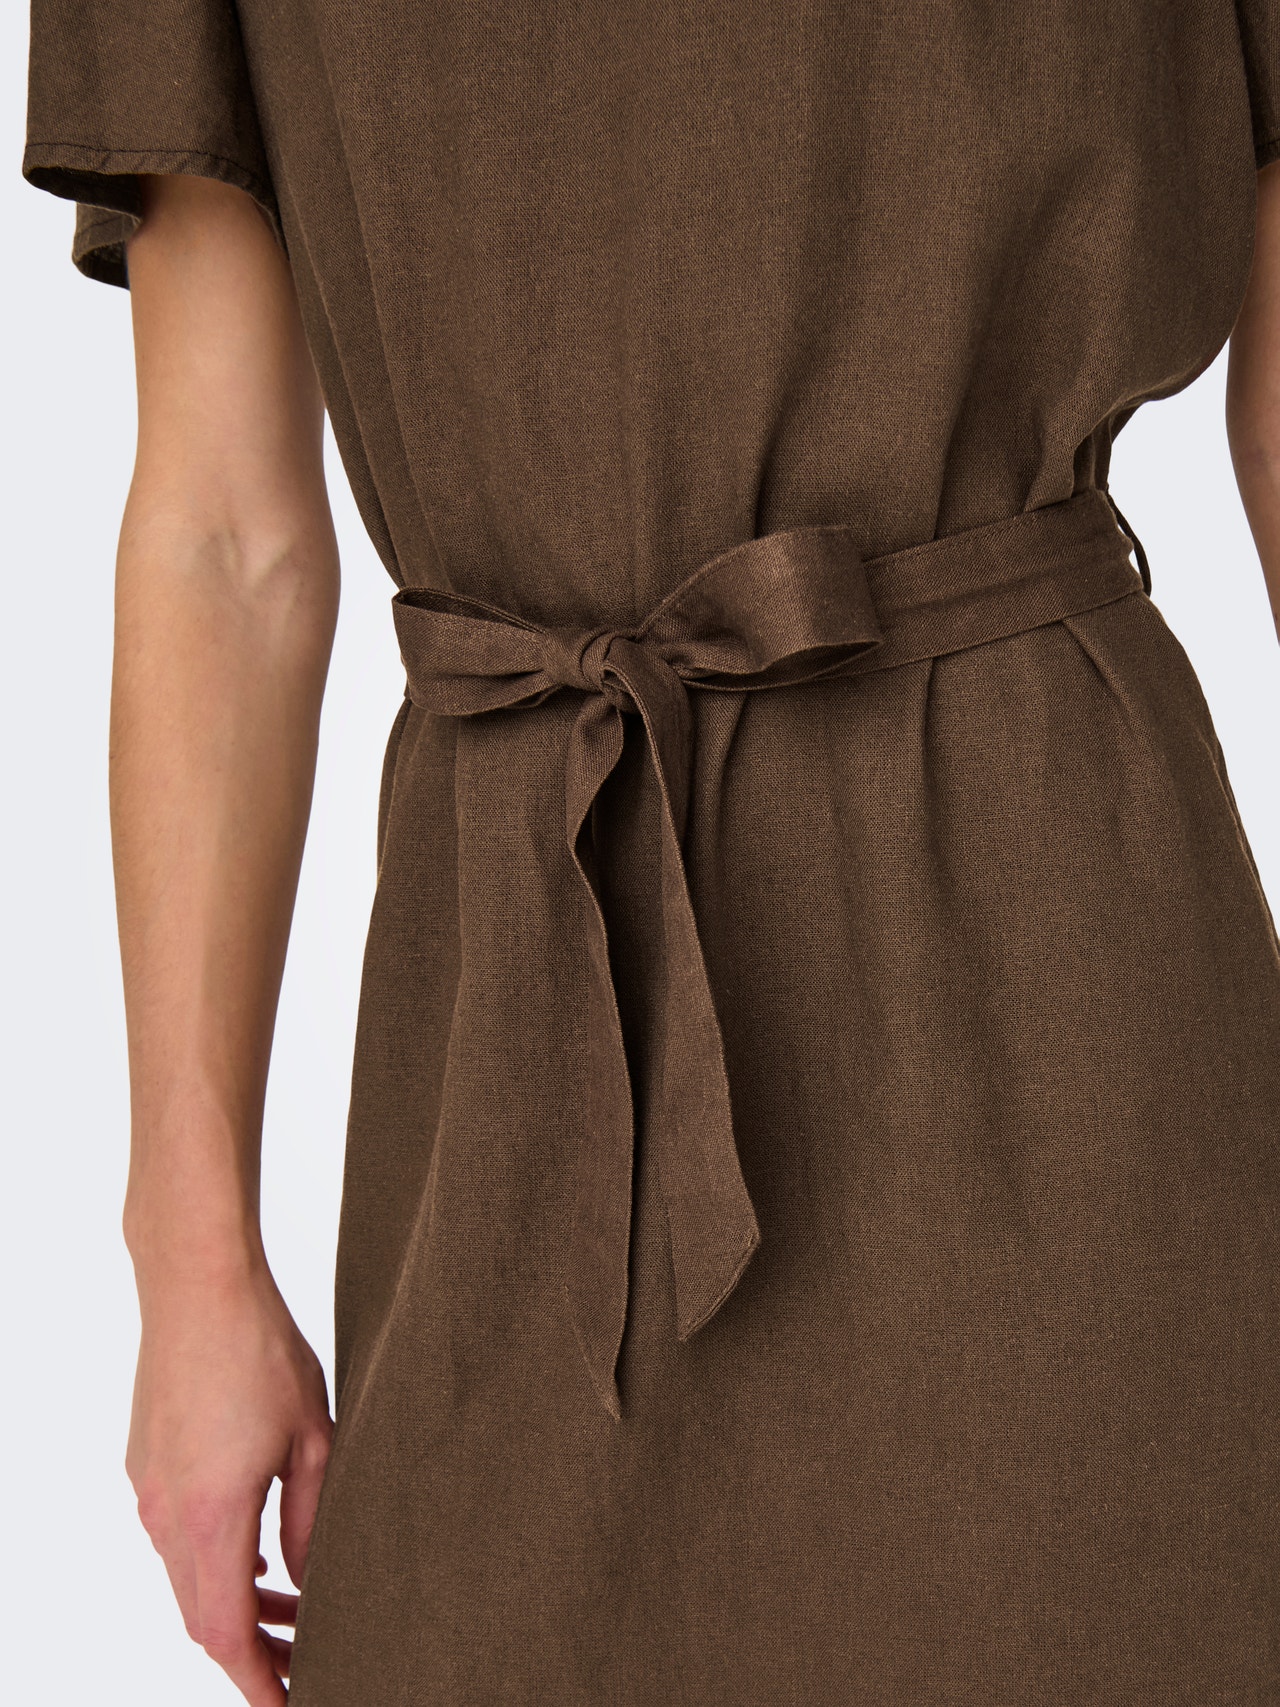 ONLY Regular Fit V-Neck Bell sleeves Short dress -Carafe - 15321189